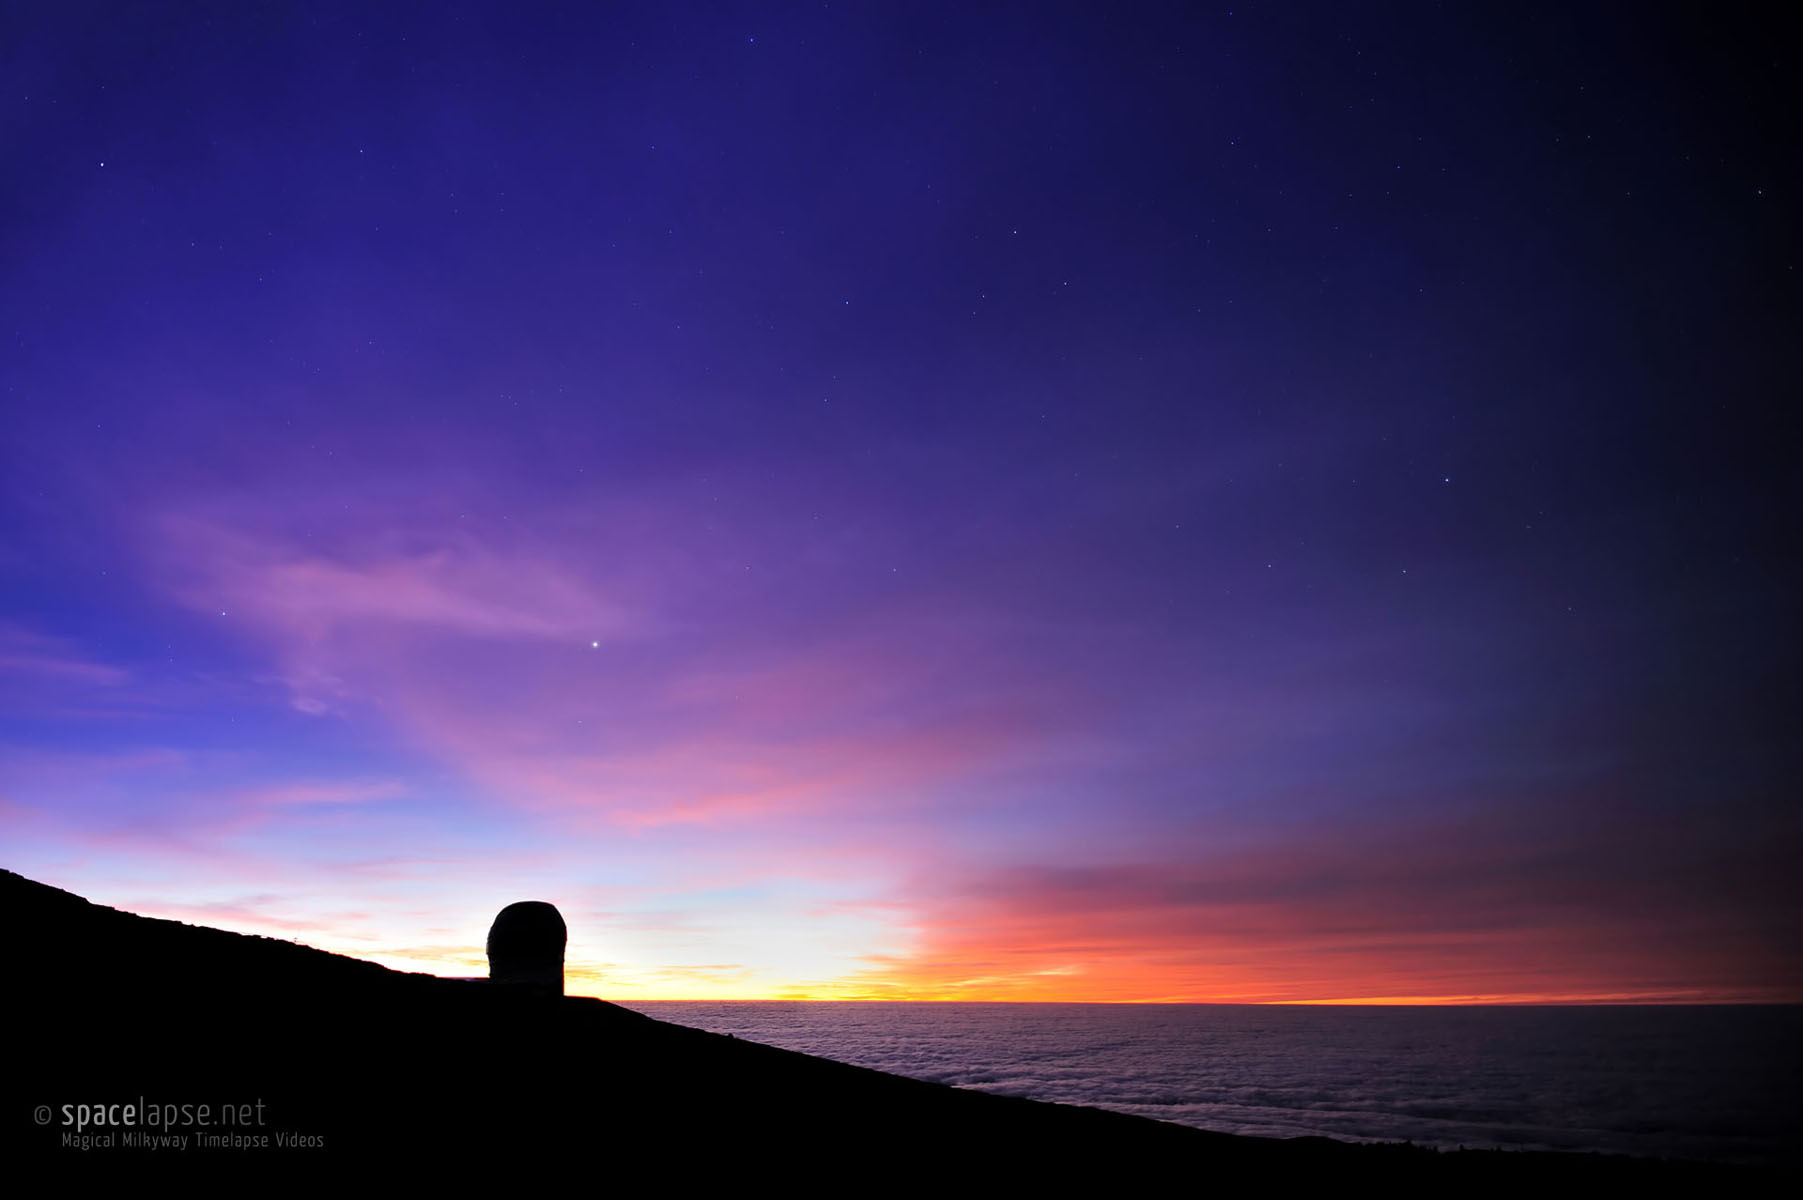 Rising Stars - In front of the Gran Telescopio Canarias, La Palma